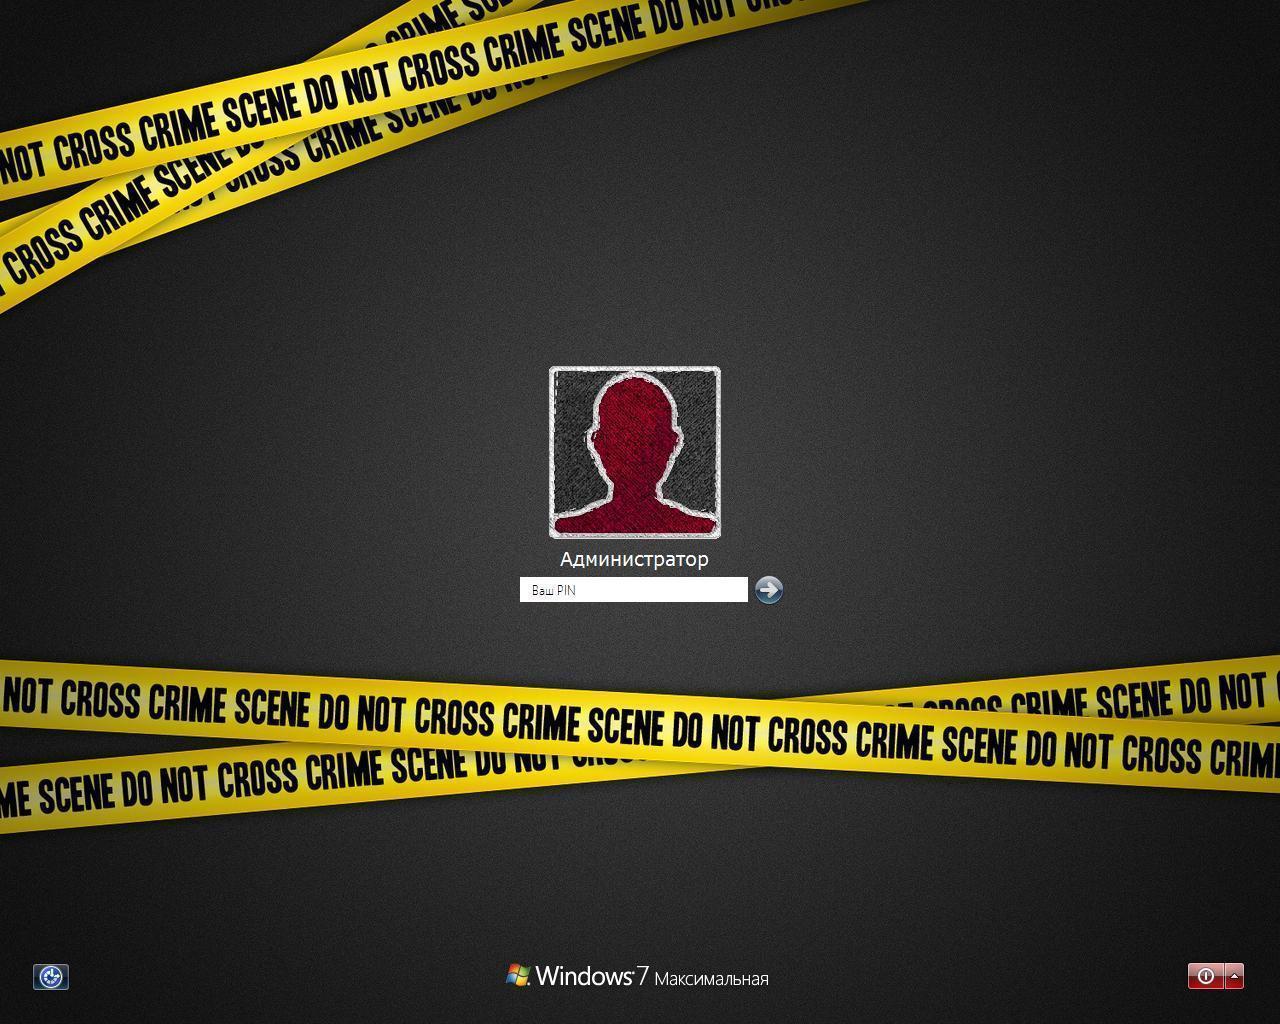 Crime Scene LogonUI for XP by stilgoin